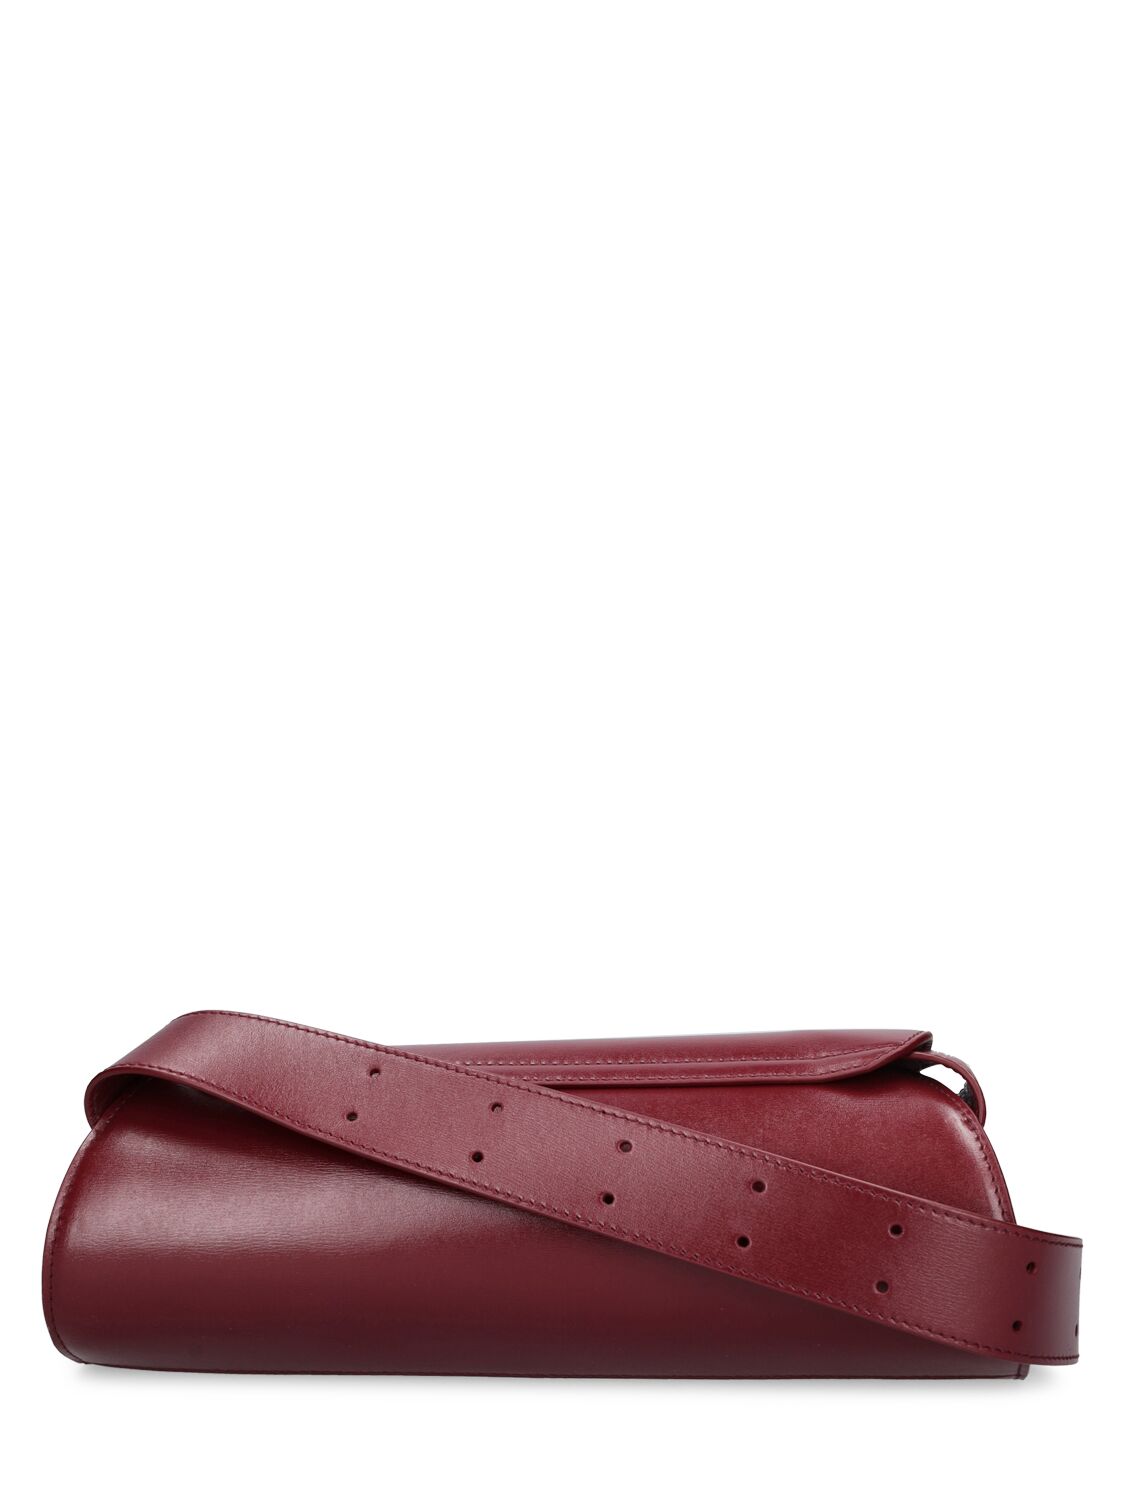 Shop Jil Sander Small Cannolo Leather Shoulder Bag In Garnet Red